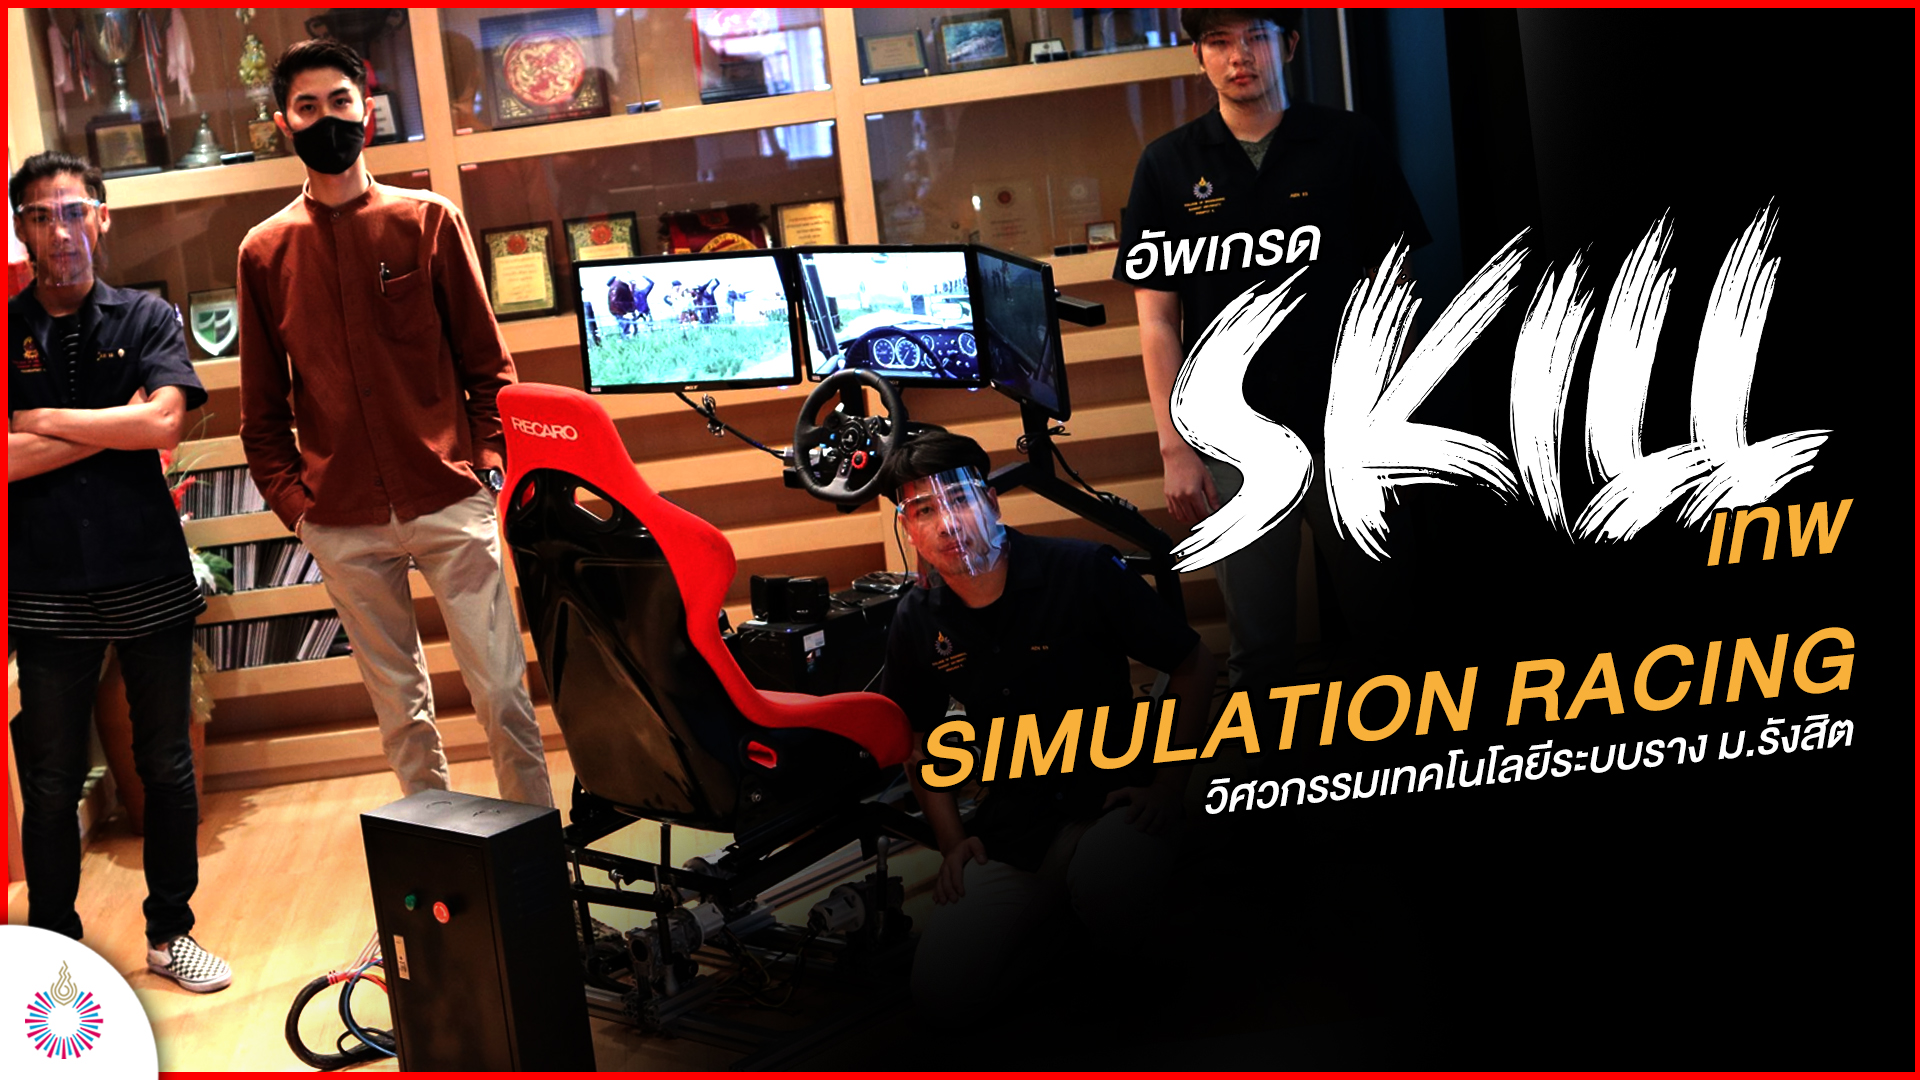 เรียน ม.รังสิต อยากได้อะไรต้องได้ : SKILL “Simulation Racing” เรียนแข่งราง ลองแข่งรถ พร้อมแข่งจริง